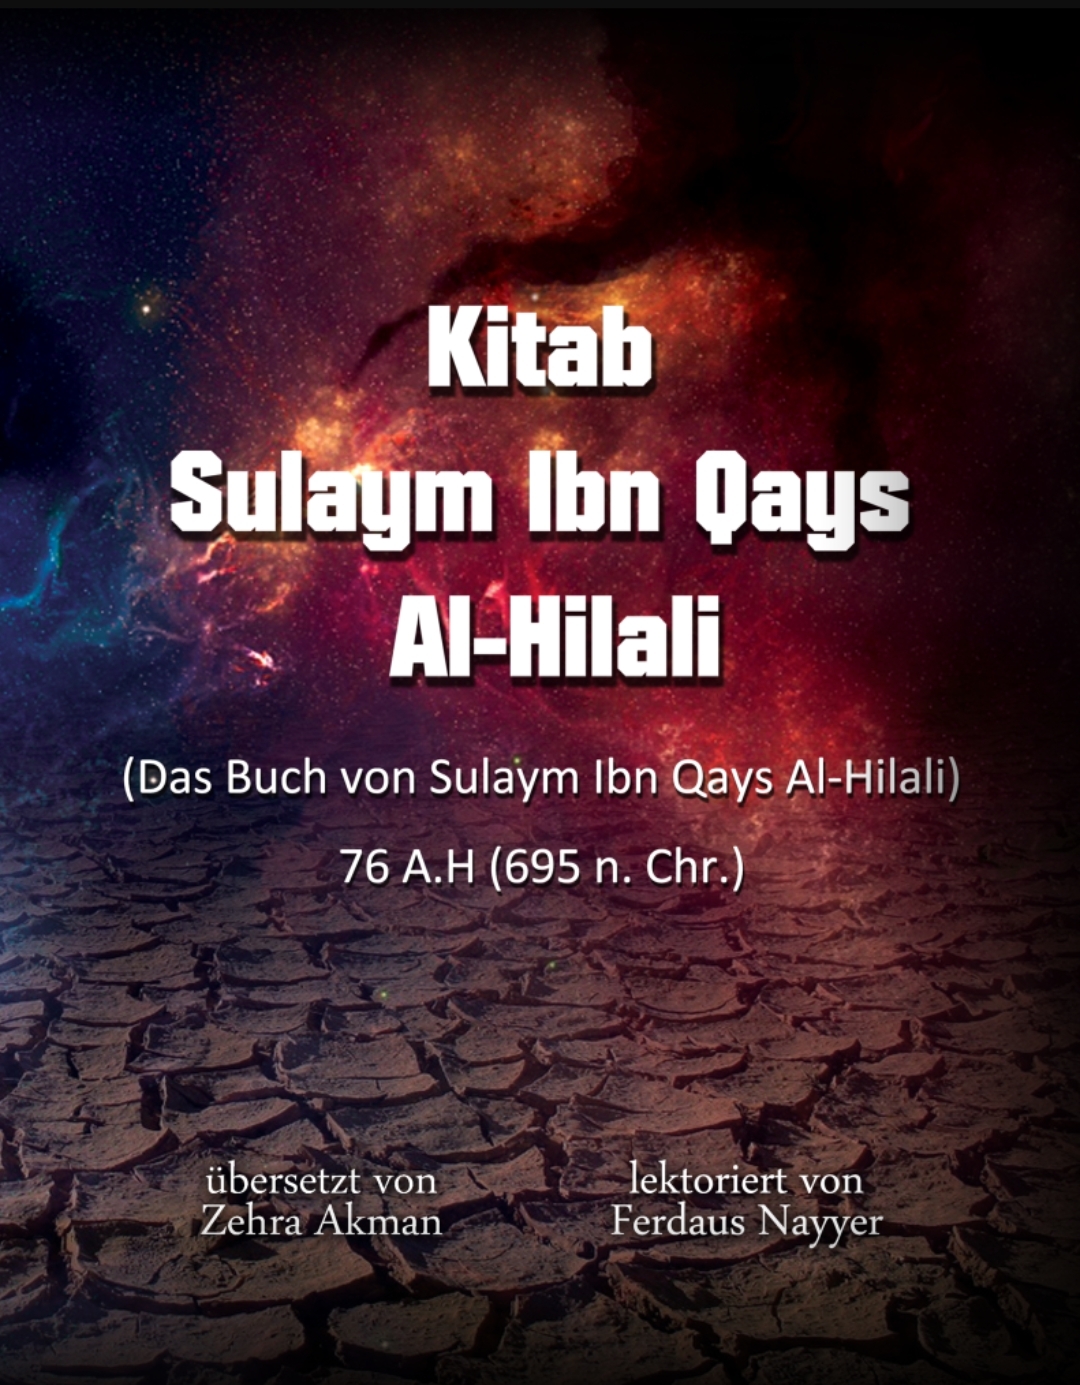 Buch von Sulaym Ibn Qays Al Hilali